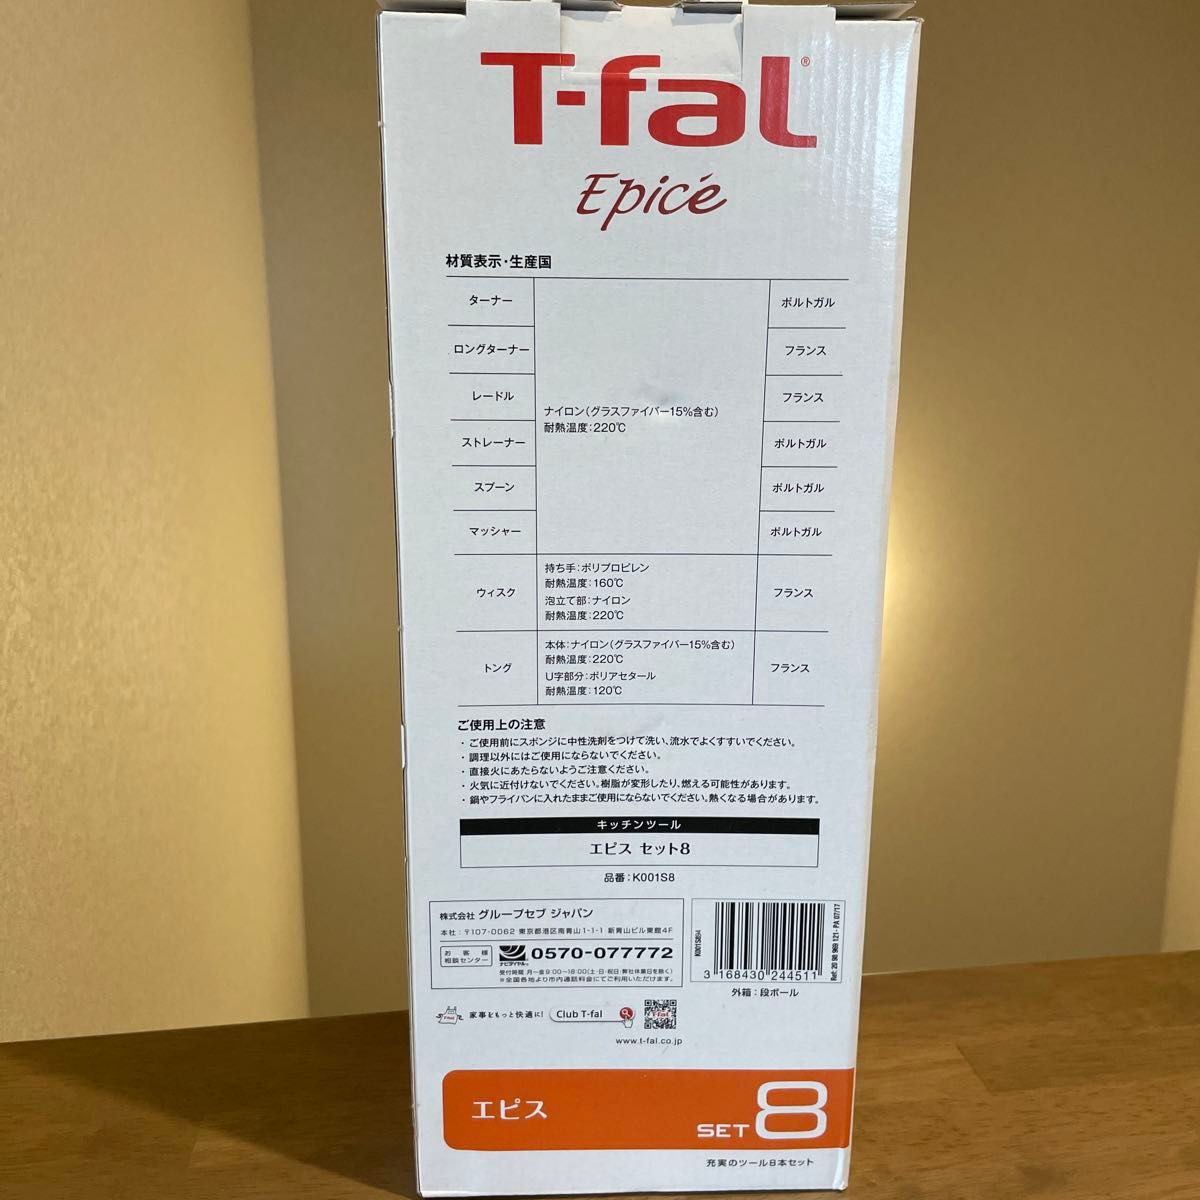 【新品未開封】ティファール　エピス　8点セット　T-fal Epice 調理器具